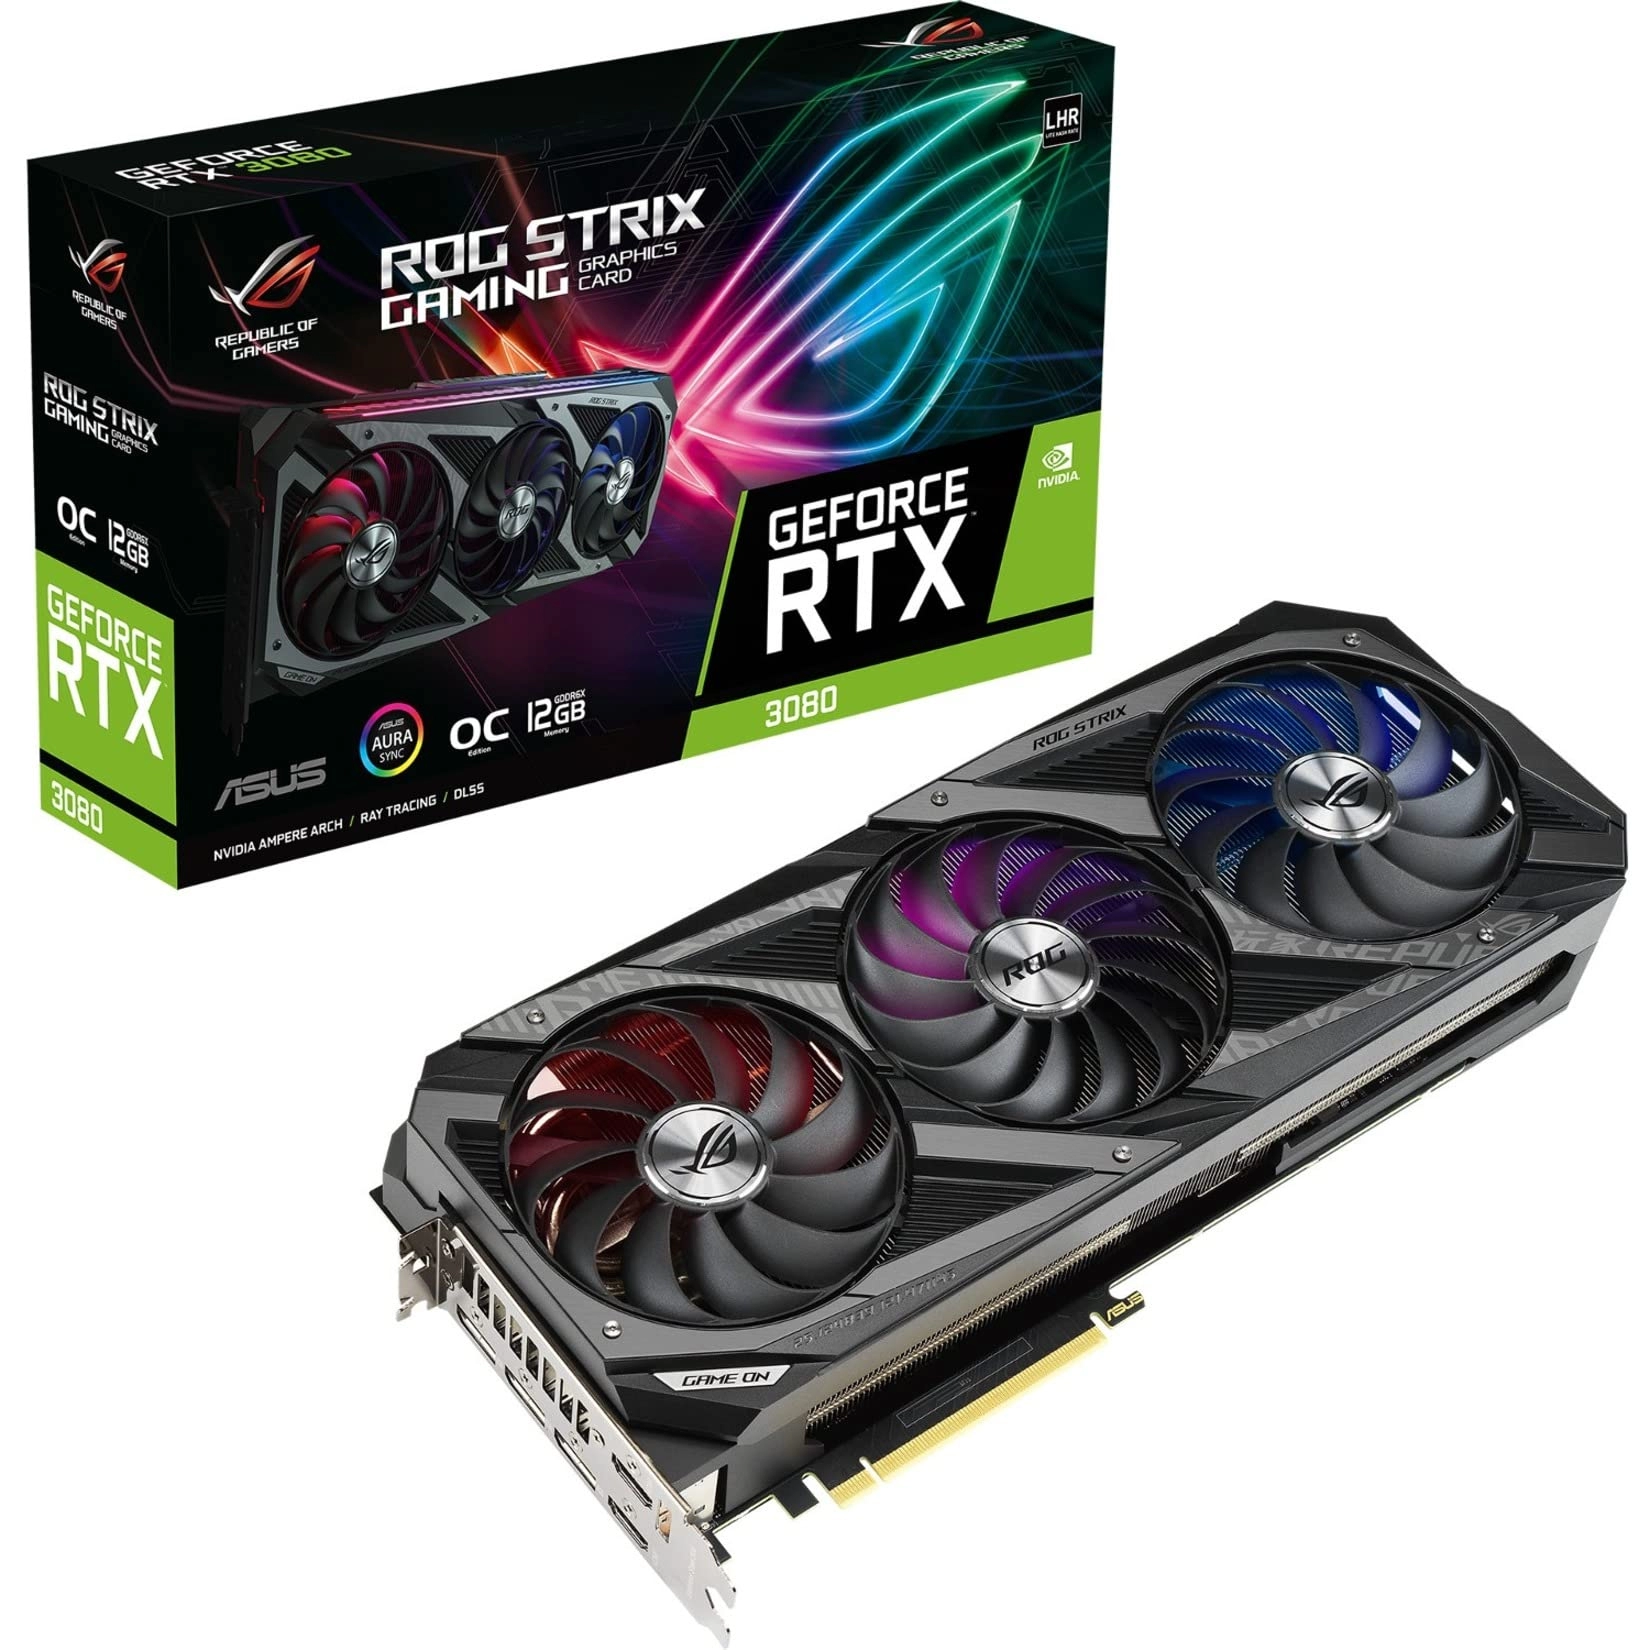 ASUS ROG Strix GeForce RTX 3080 Gaming 12GB Package